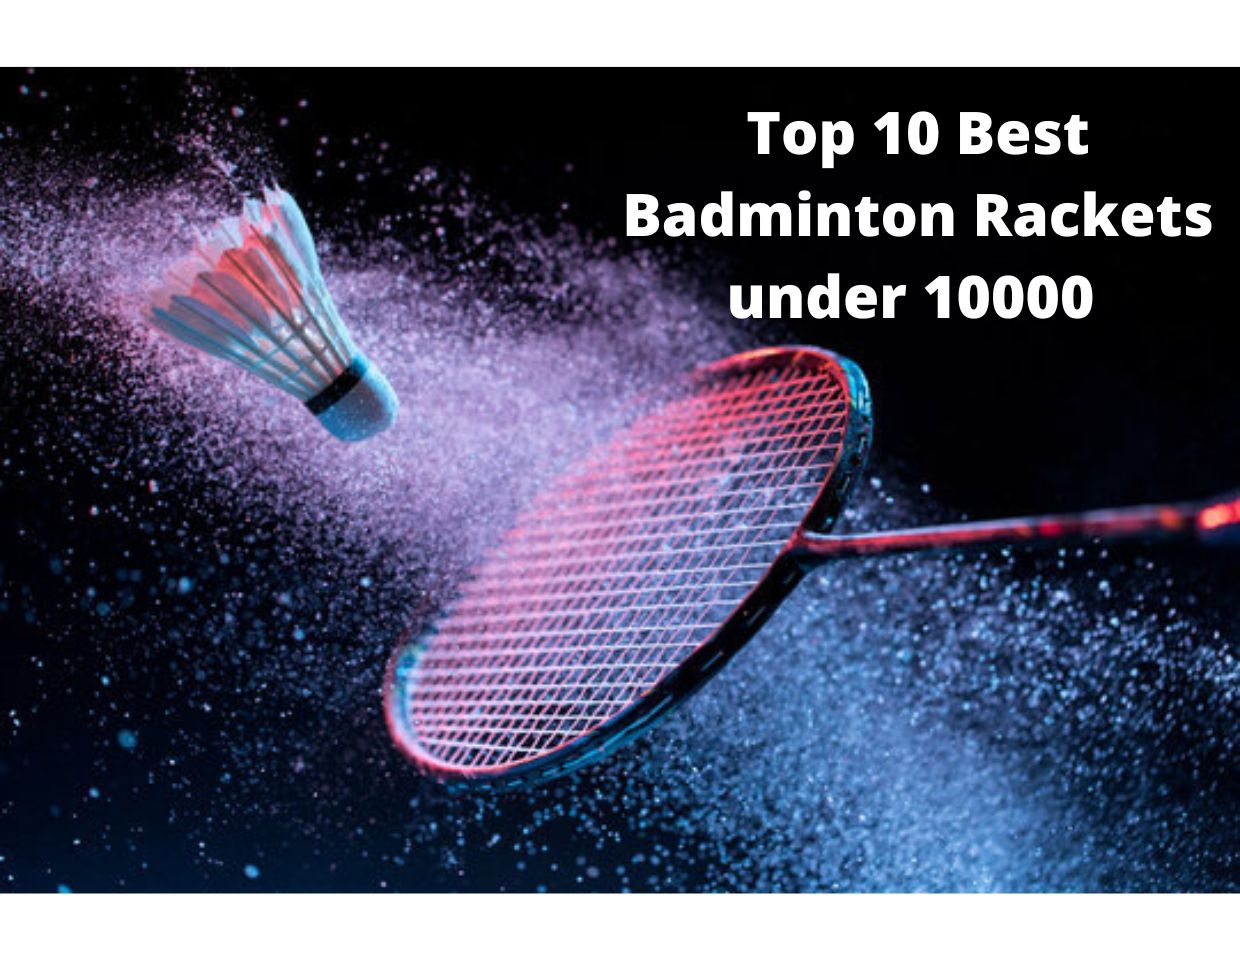 Top 10 Best Badminton Rackets under 10000